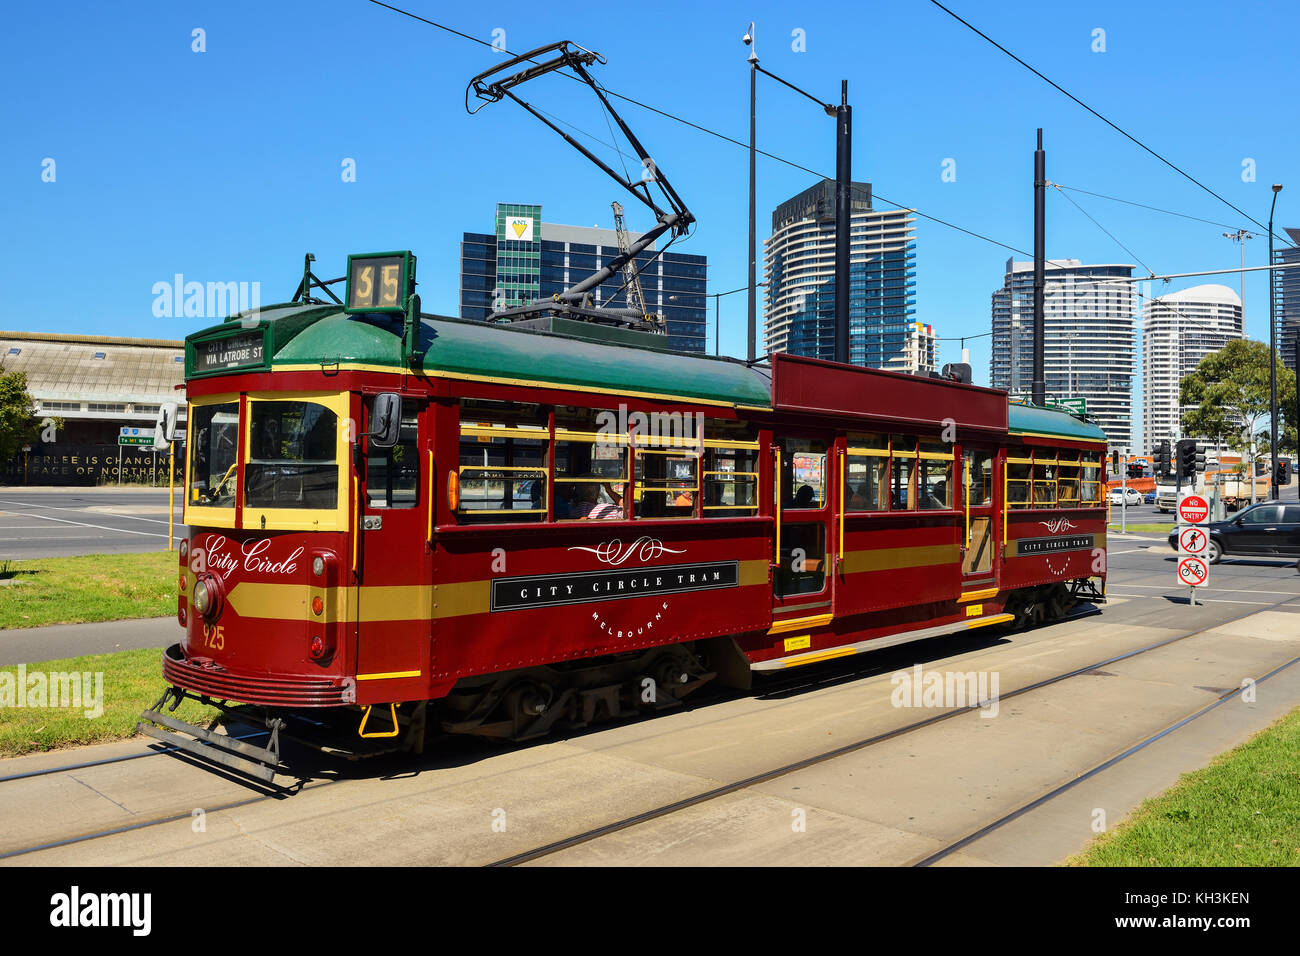 City Circle tram 35, d'un tram touristique, opère dans le quartier central des affaires de Melbourne, Victoria, Australie Banque D'Images